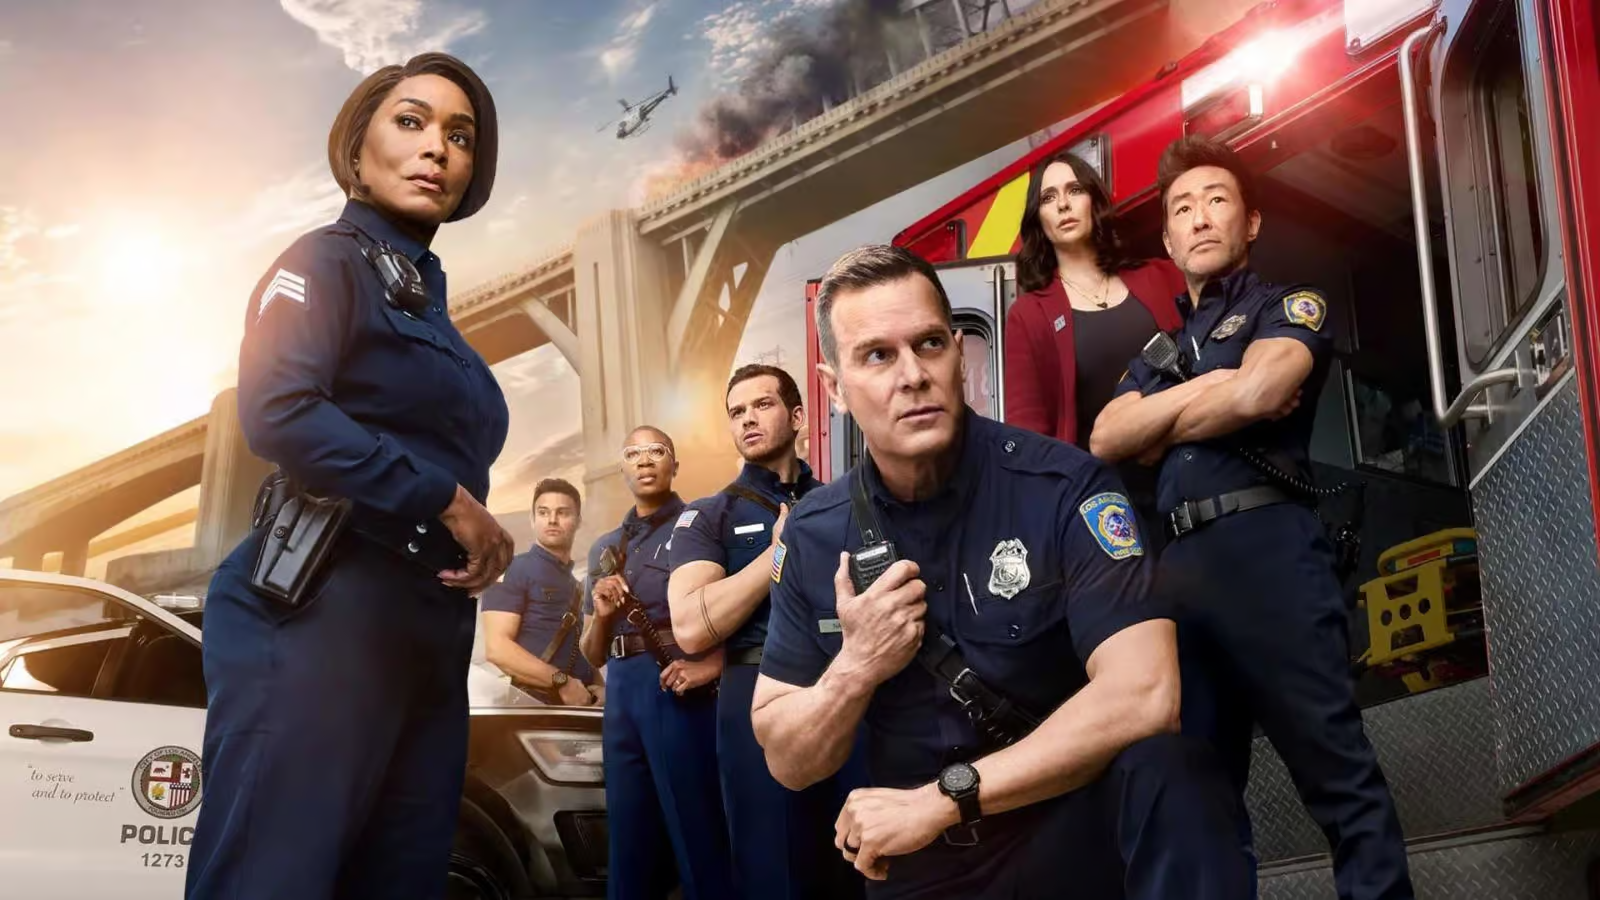 Sedma sezona serije “911” stiže na Star Channel